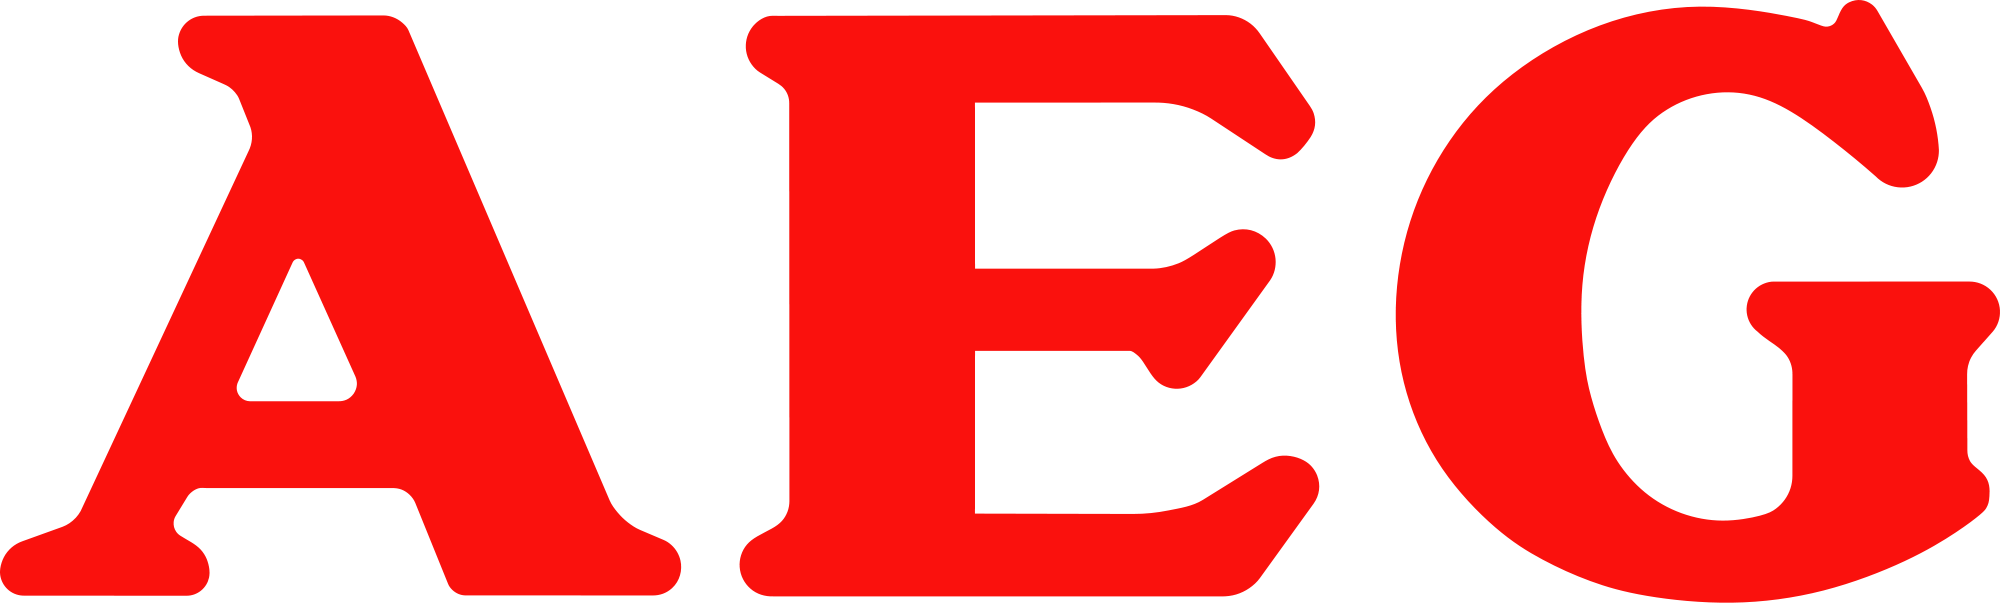 Логотип AEG (АЕГ)